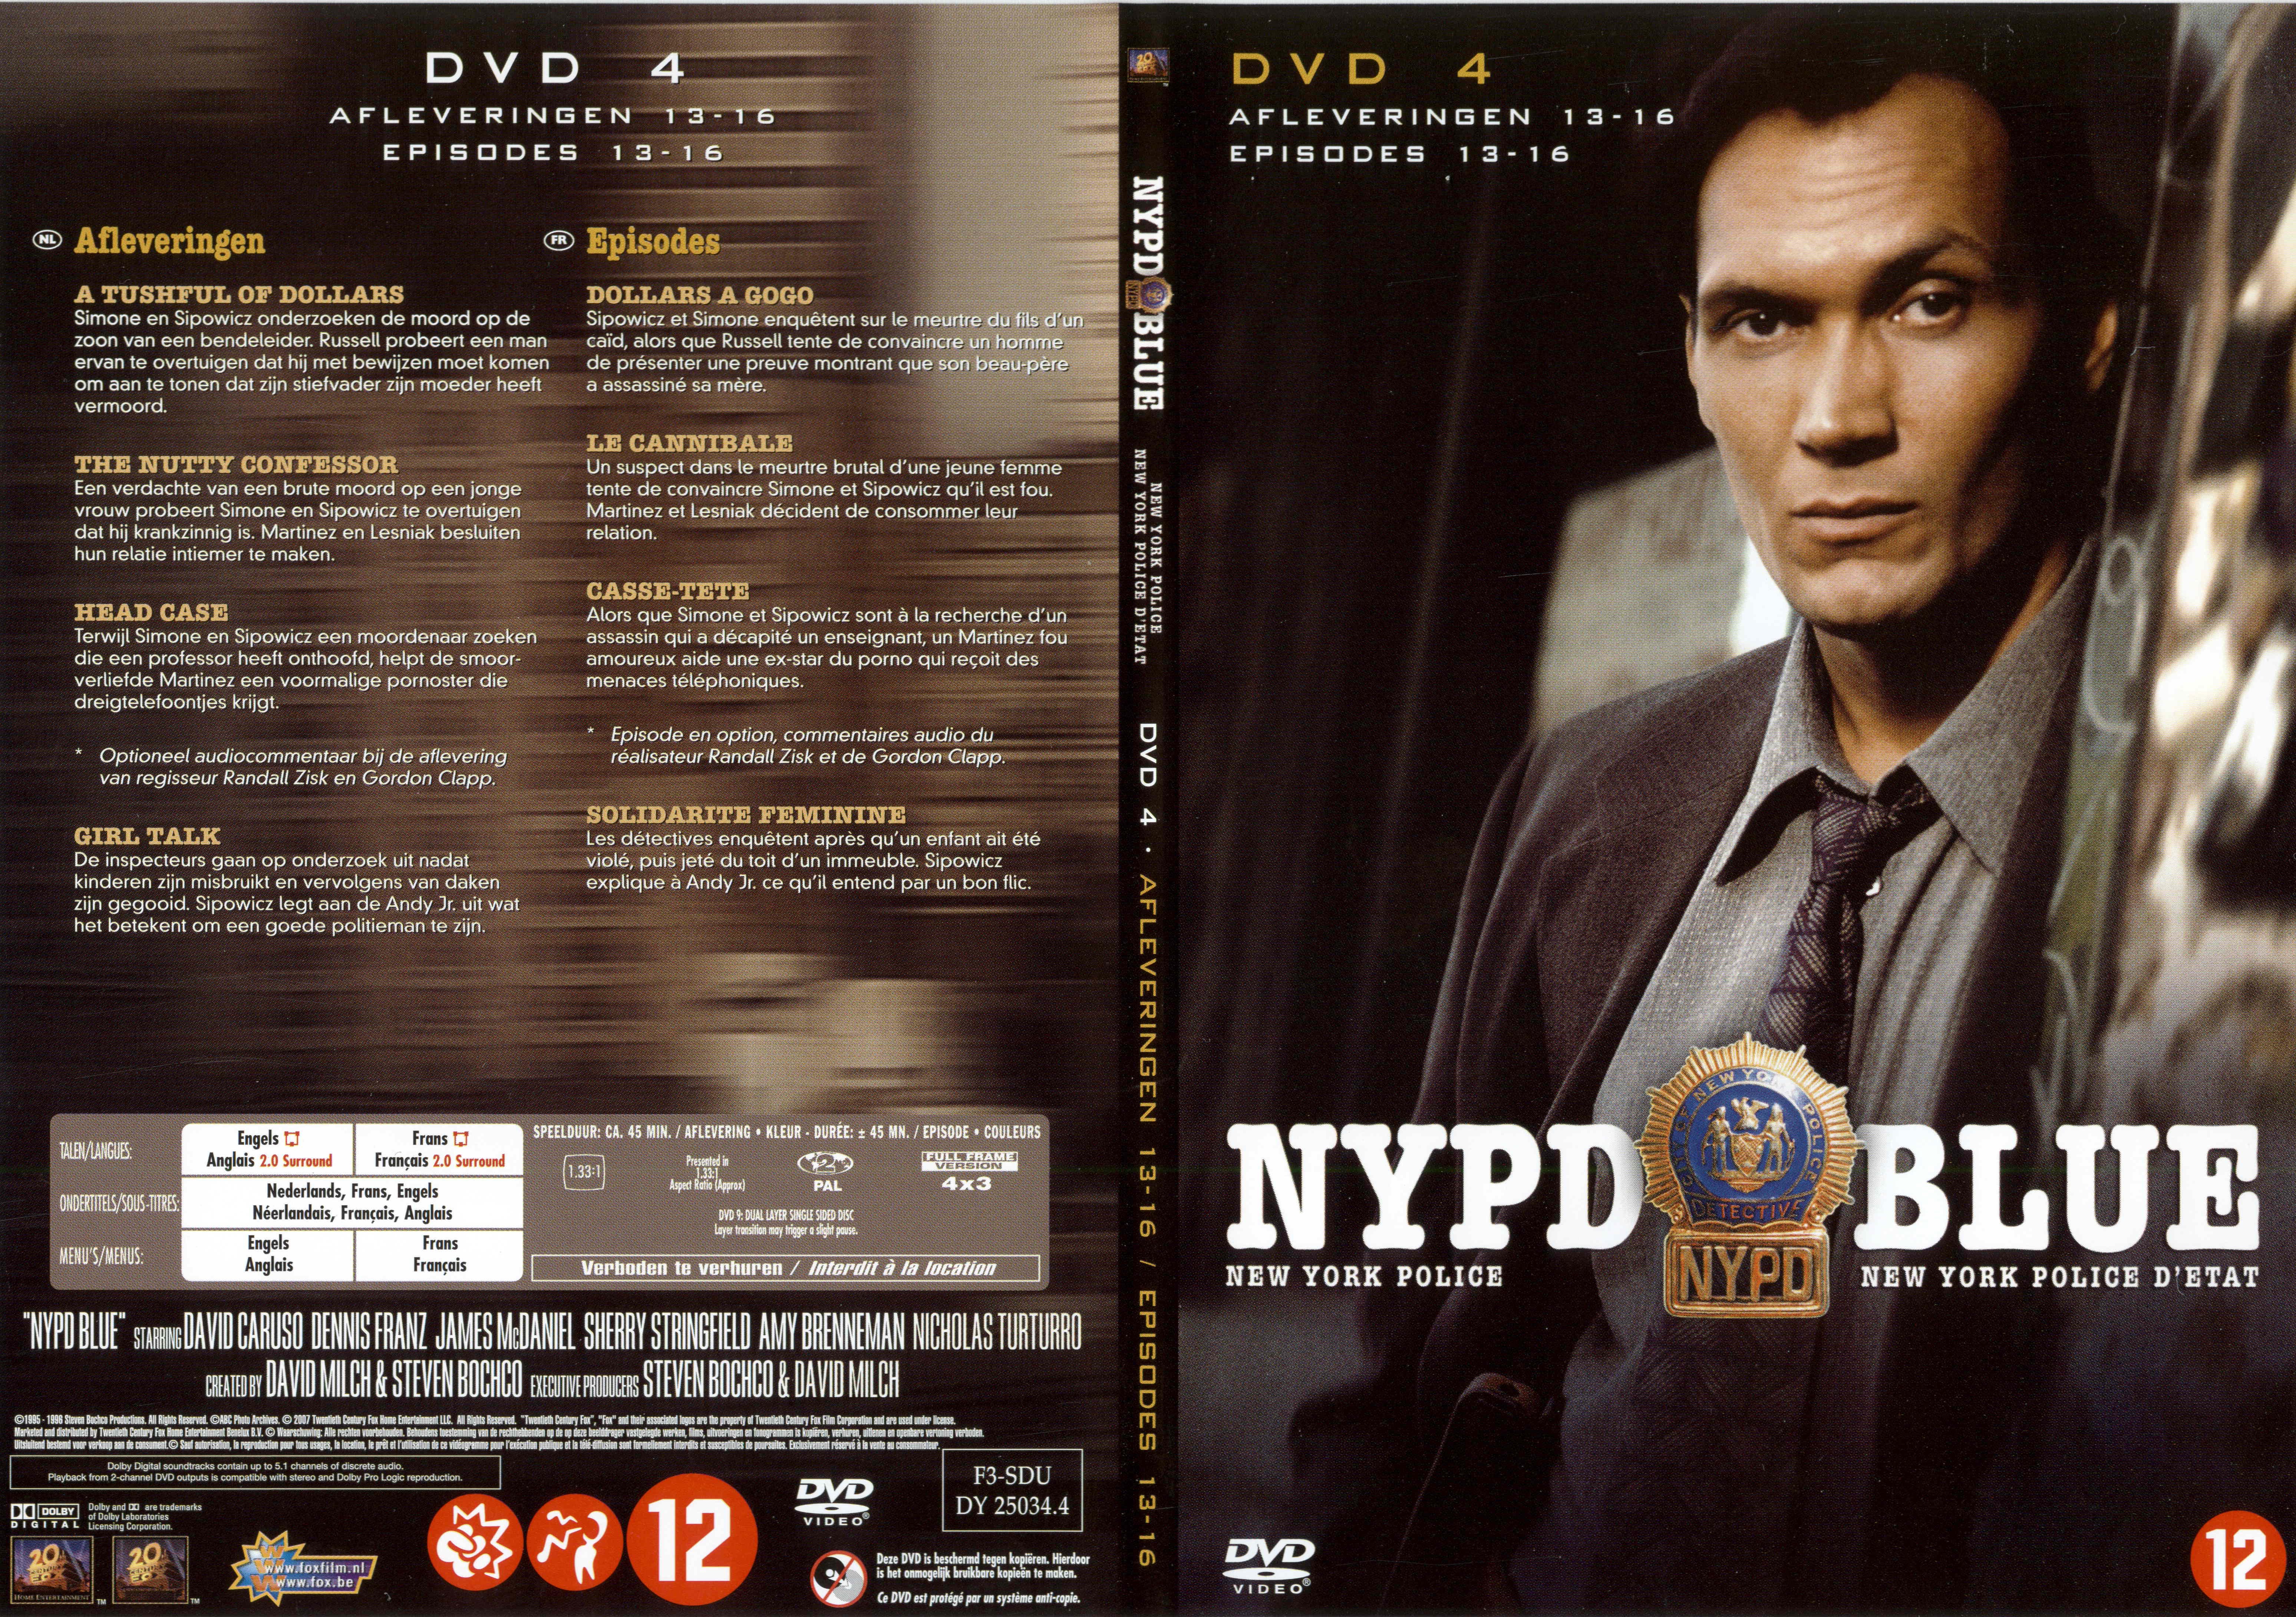 Jaquette DVD NYPD Blue saison 03 dvd 04